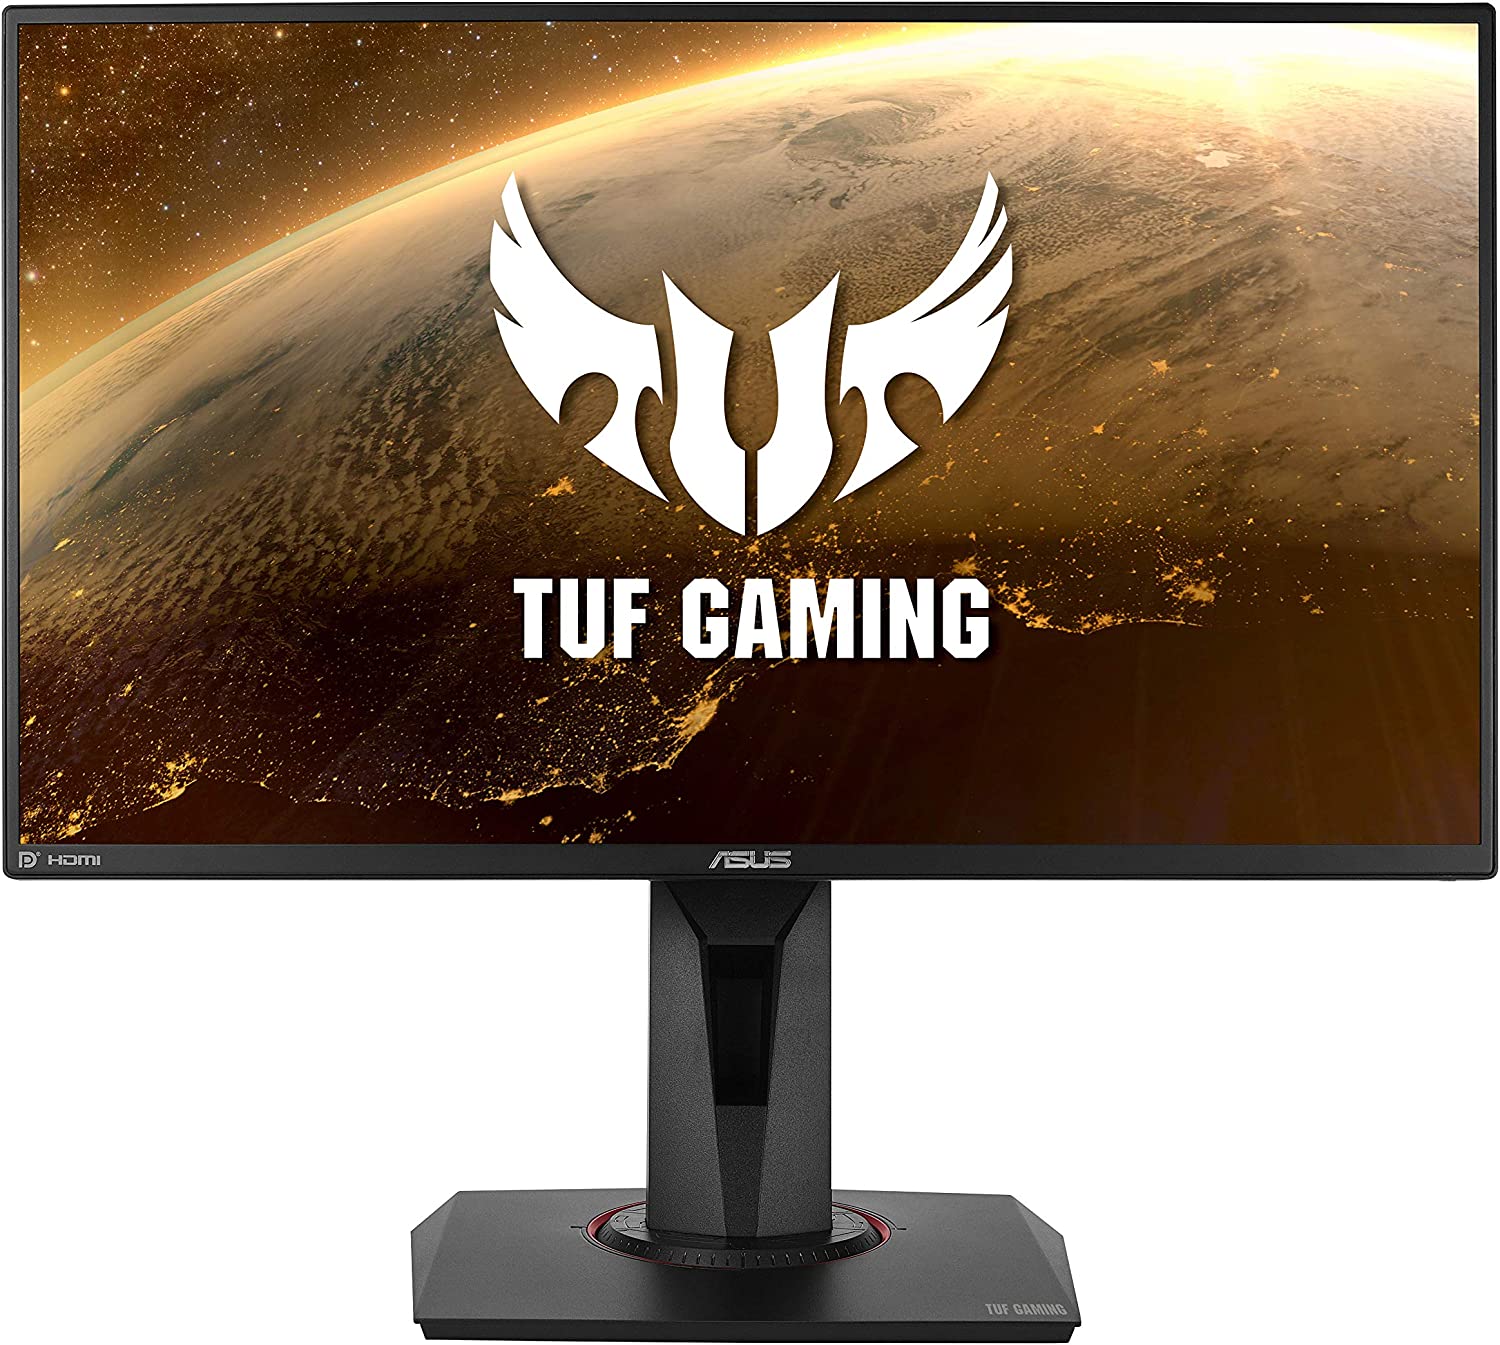 Asus Tuf Gaming Monitor